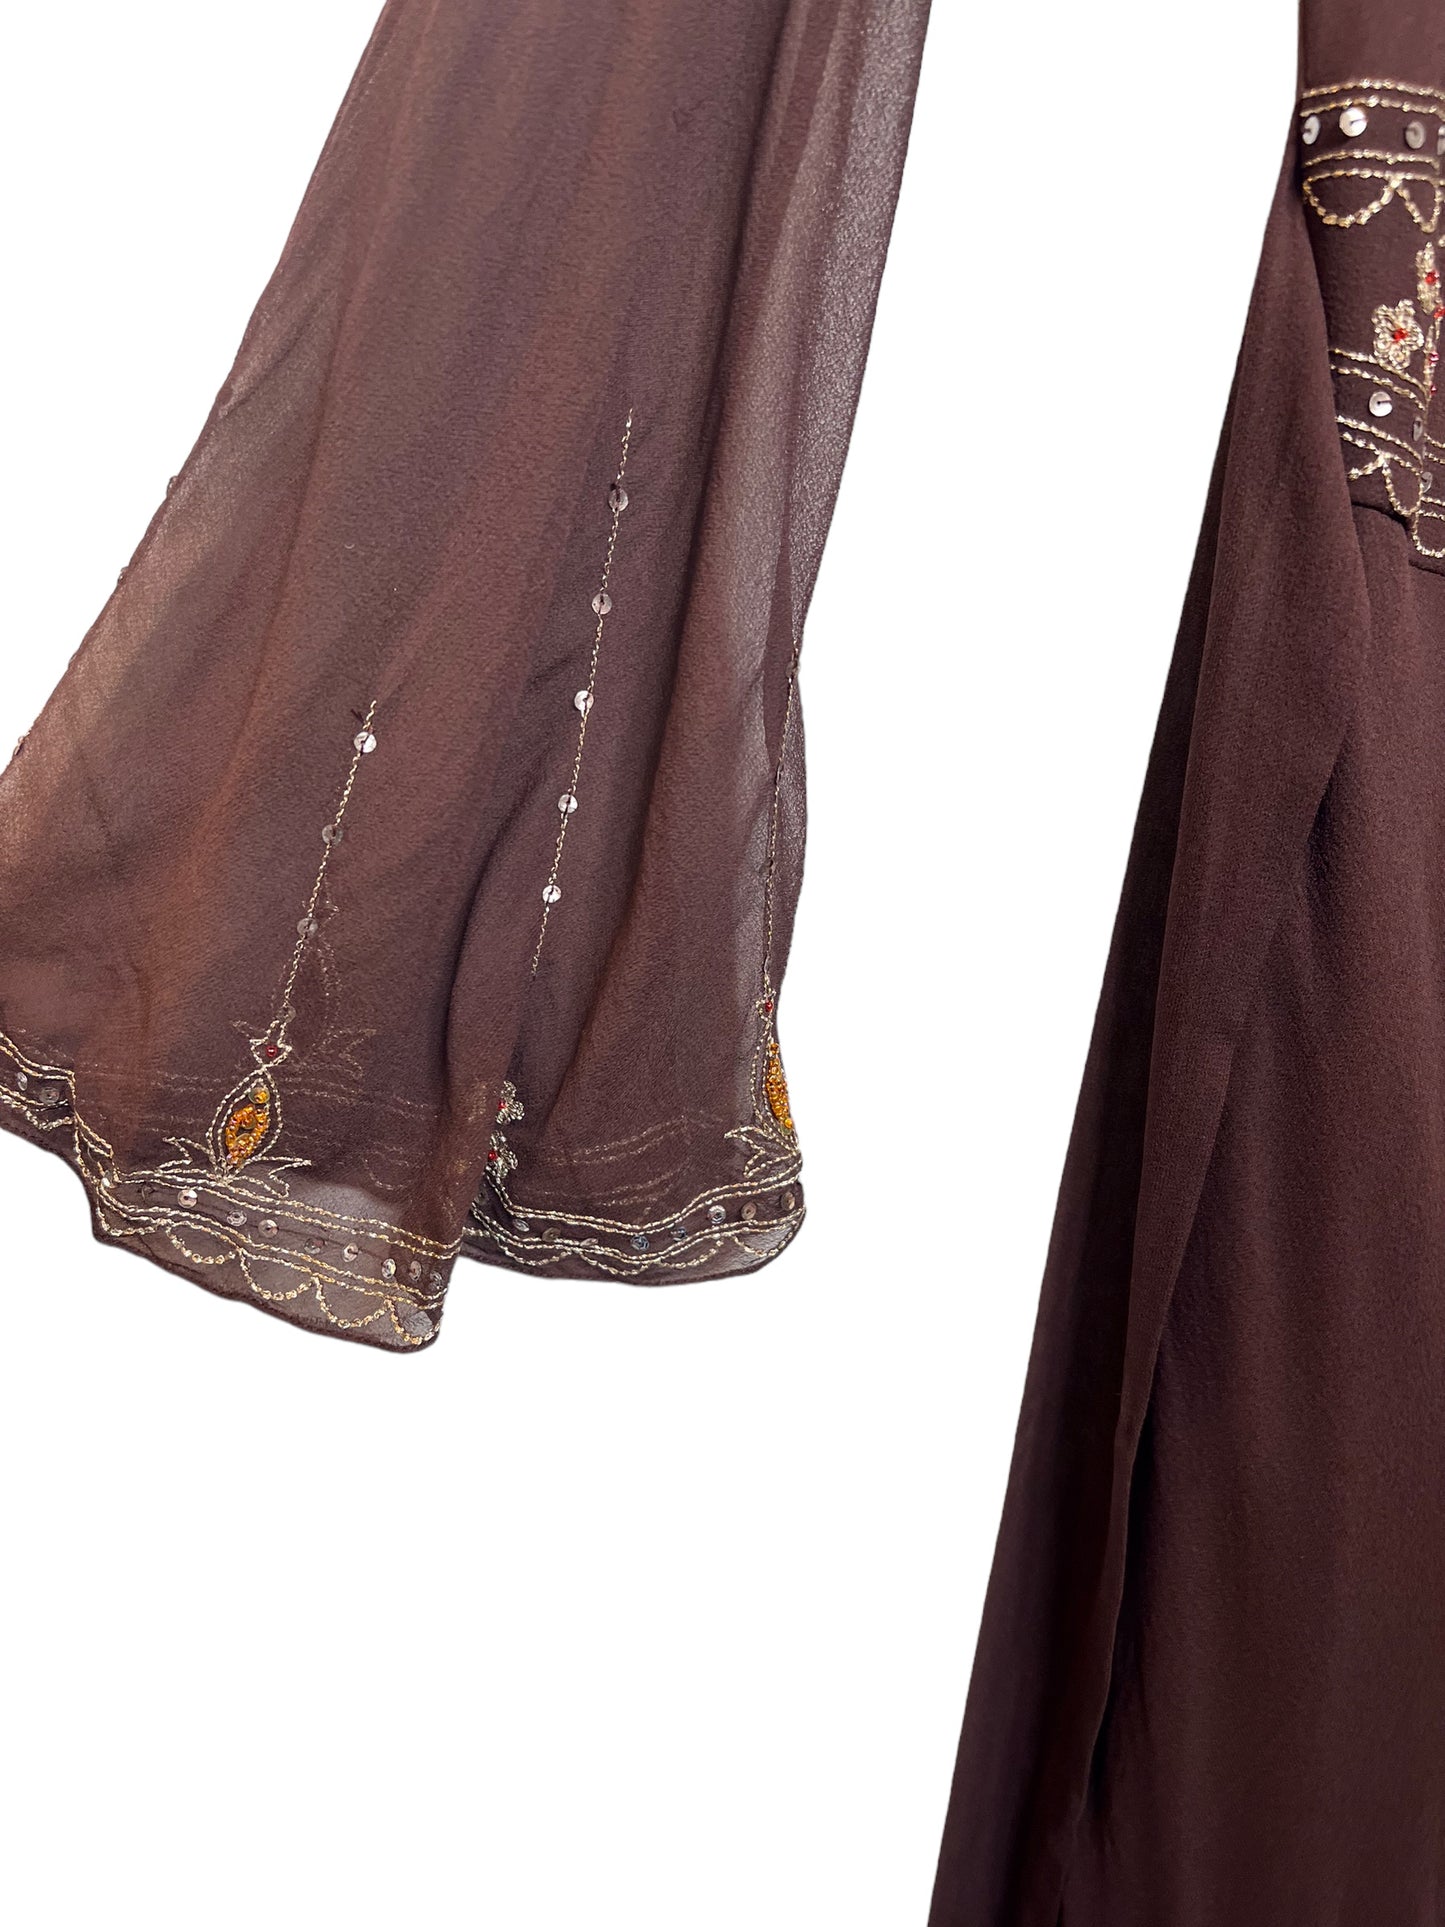 Monsoon Women’s Black Silk Bejewelled Dress (Size M)